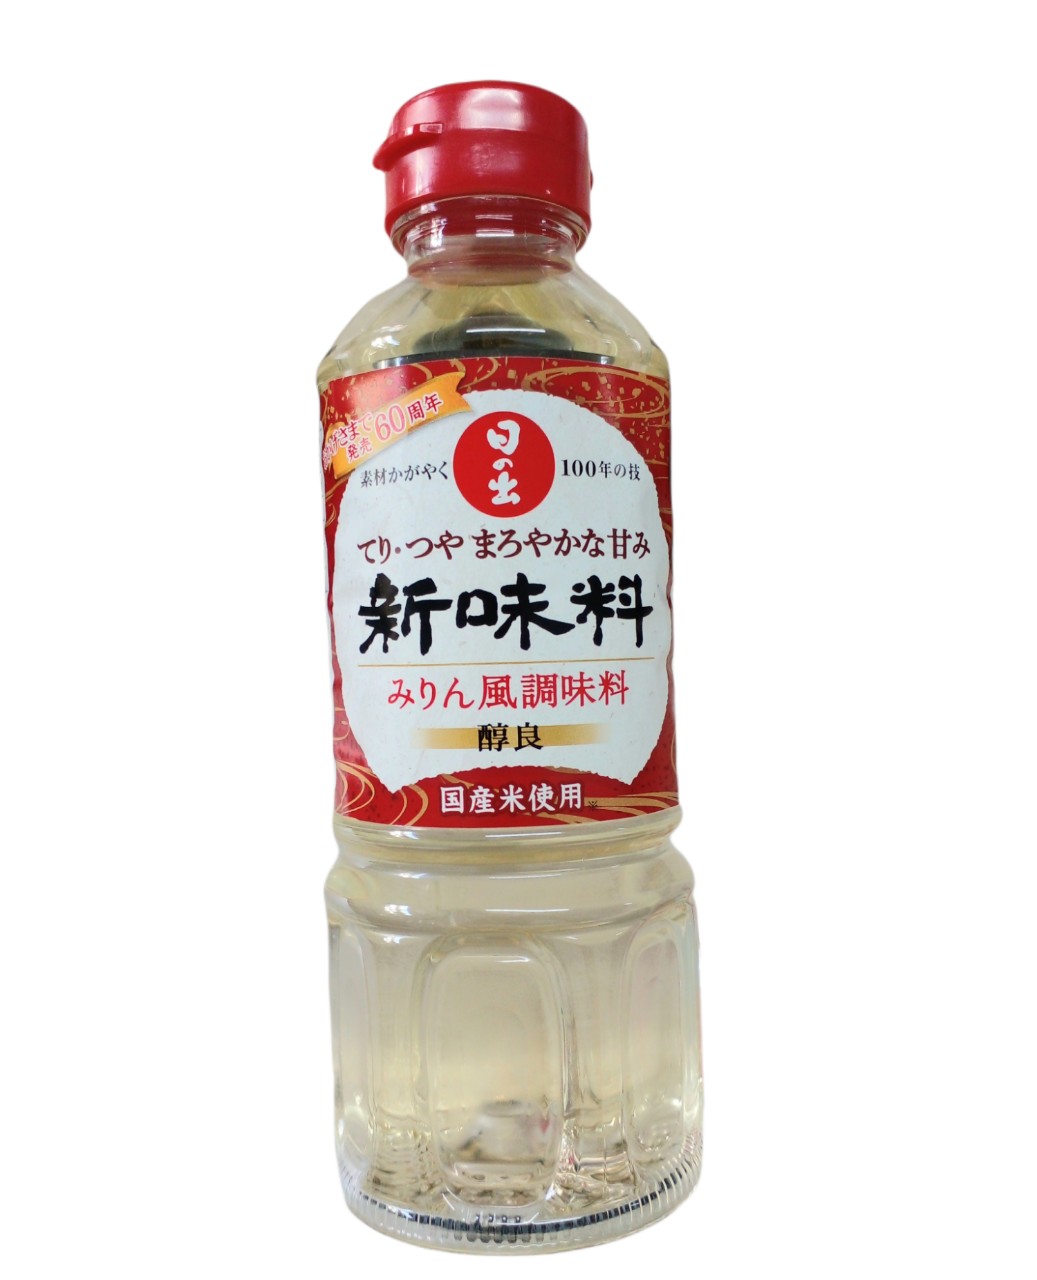 Mirin ướp vị ngọt tự nhiên Hinode 400ml .